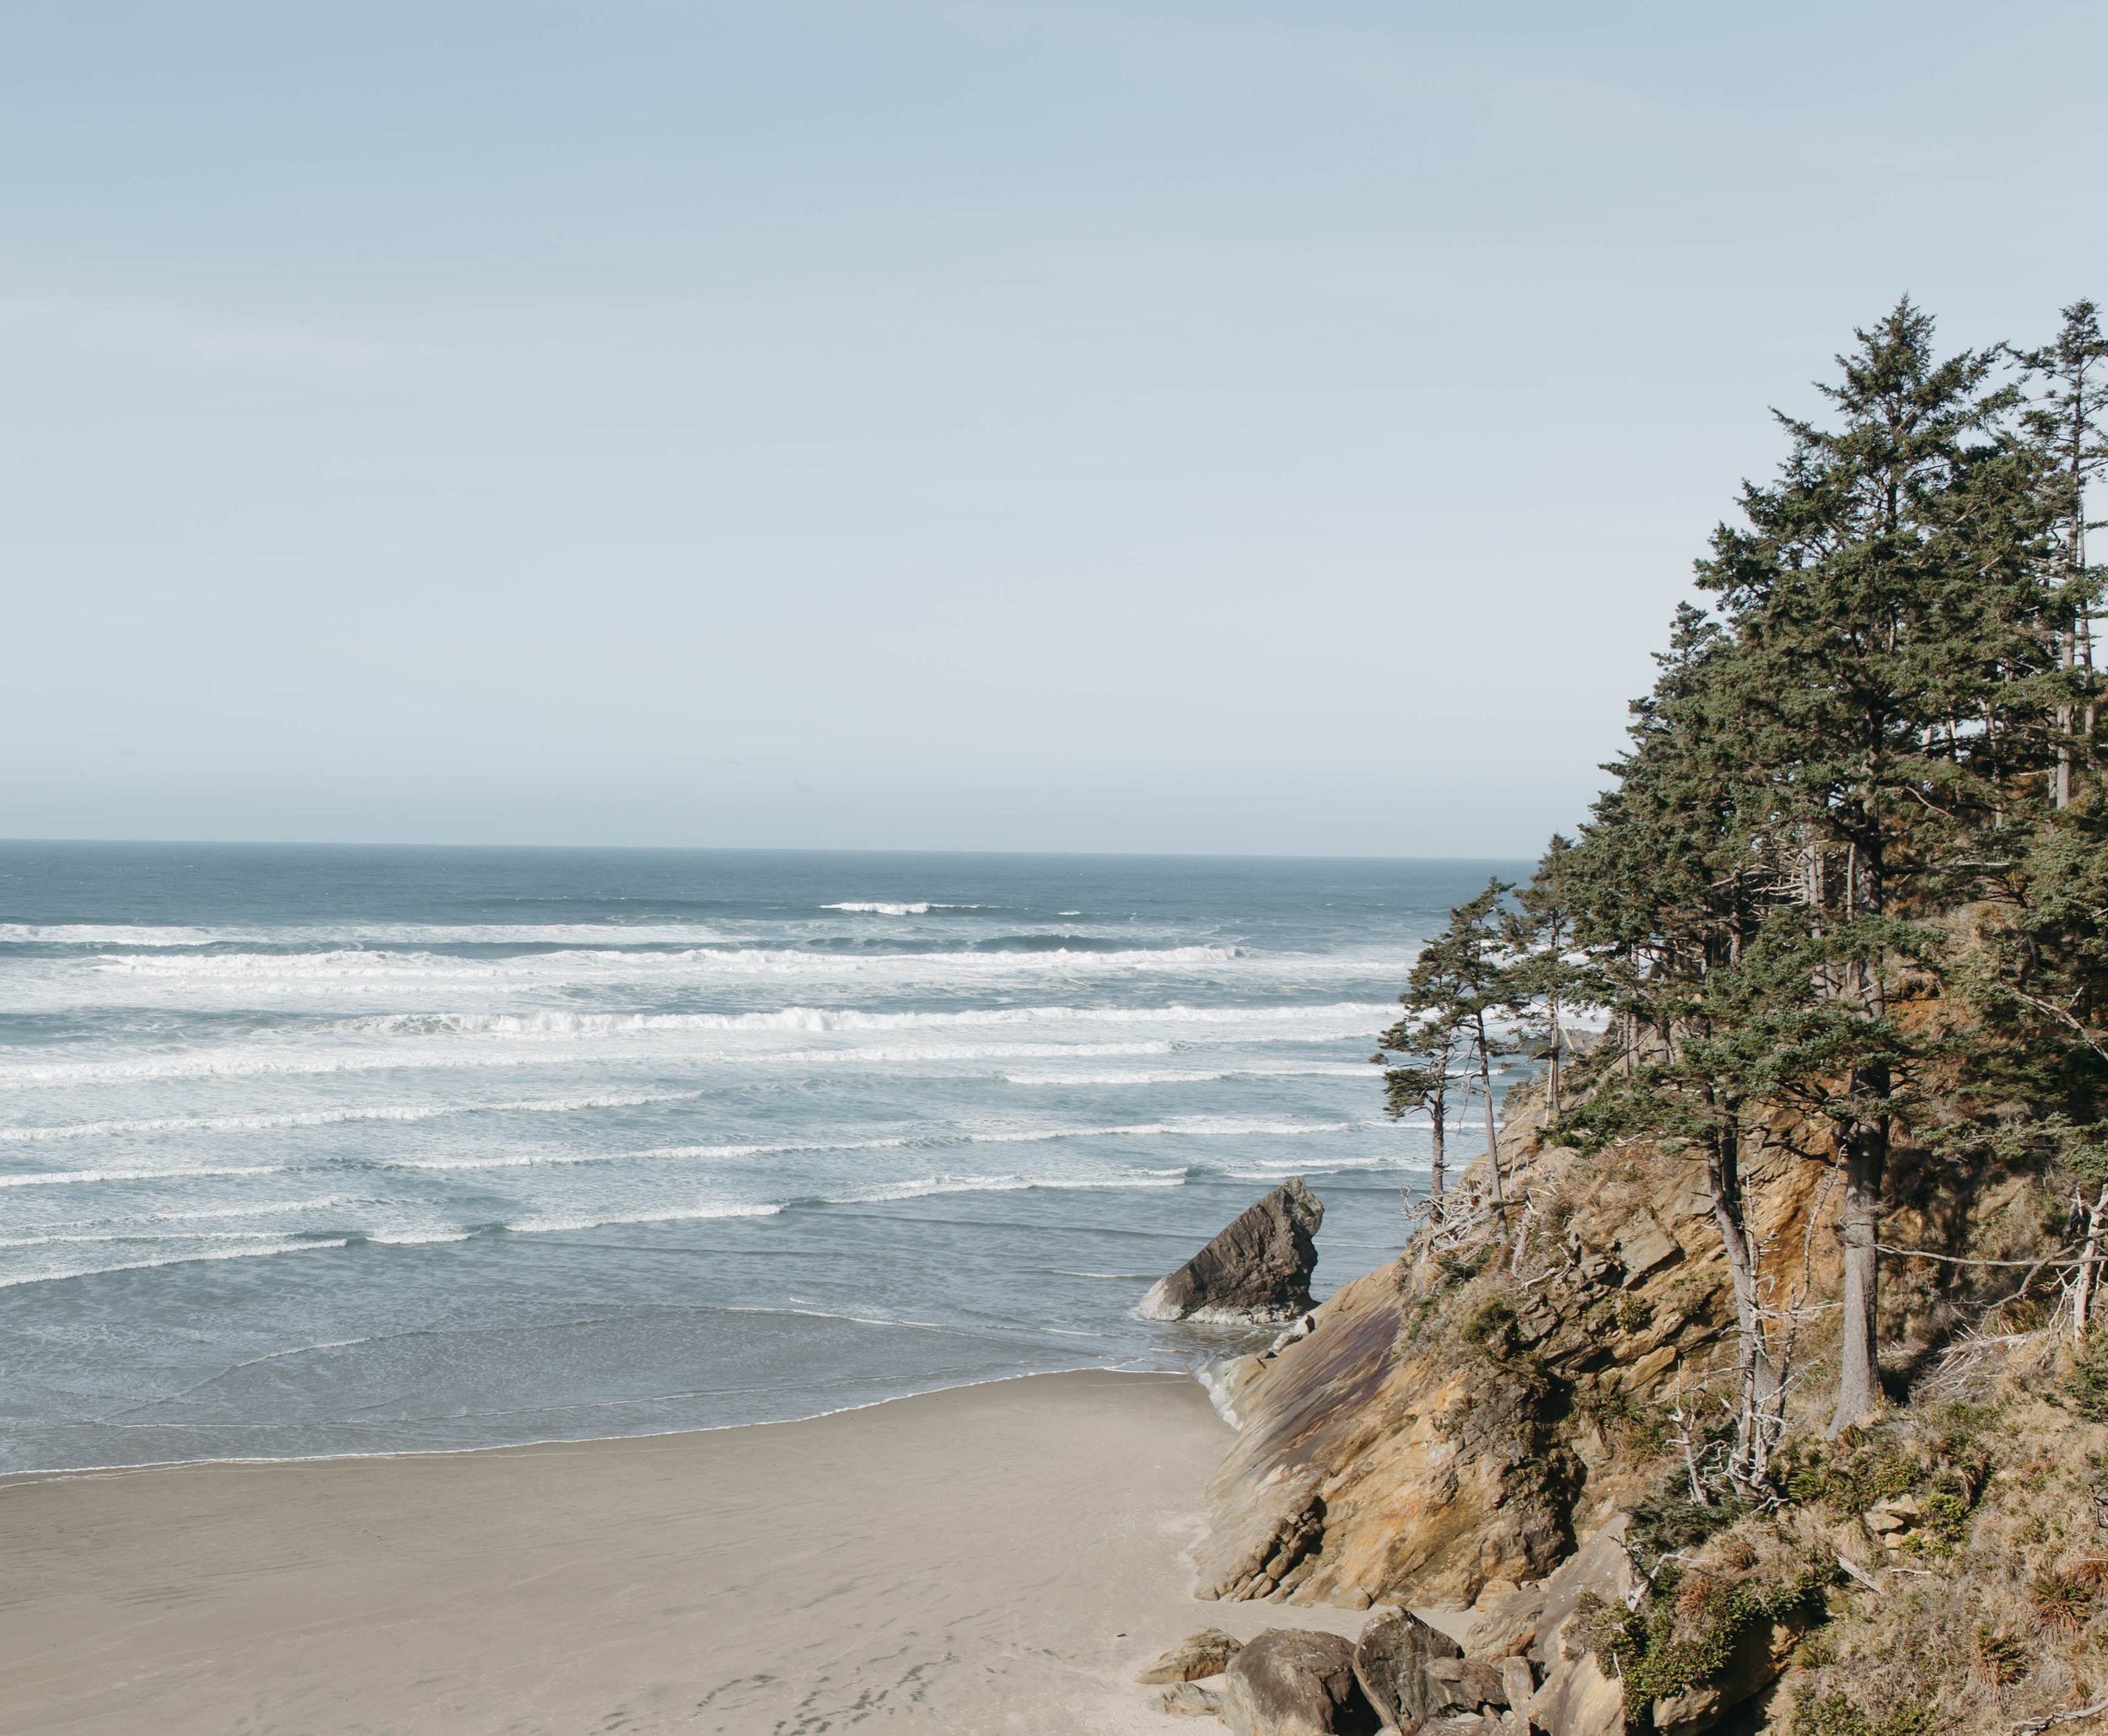  Oregon coast elopement, film photography, arch cape 